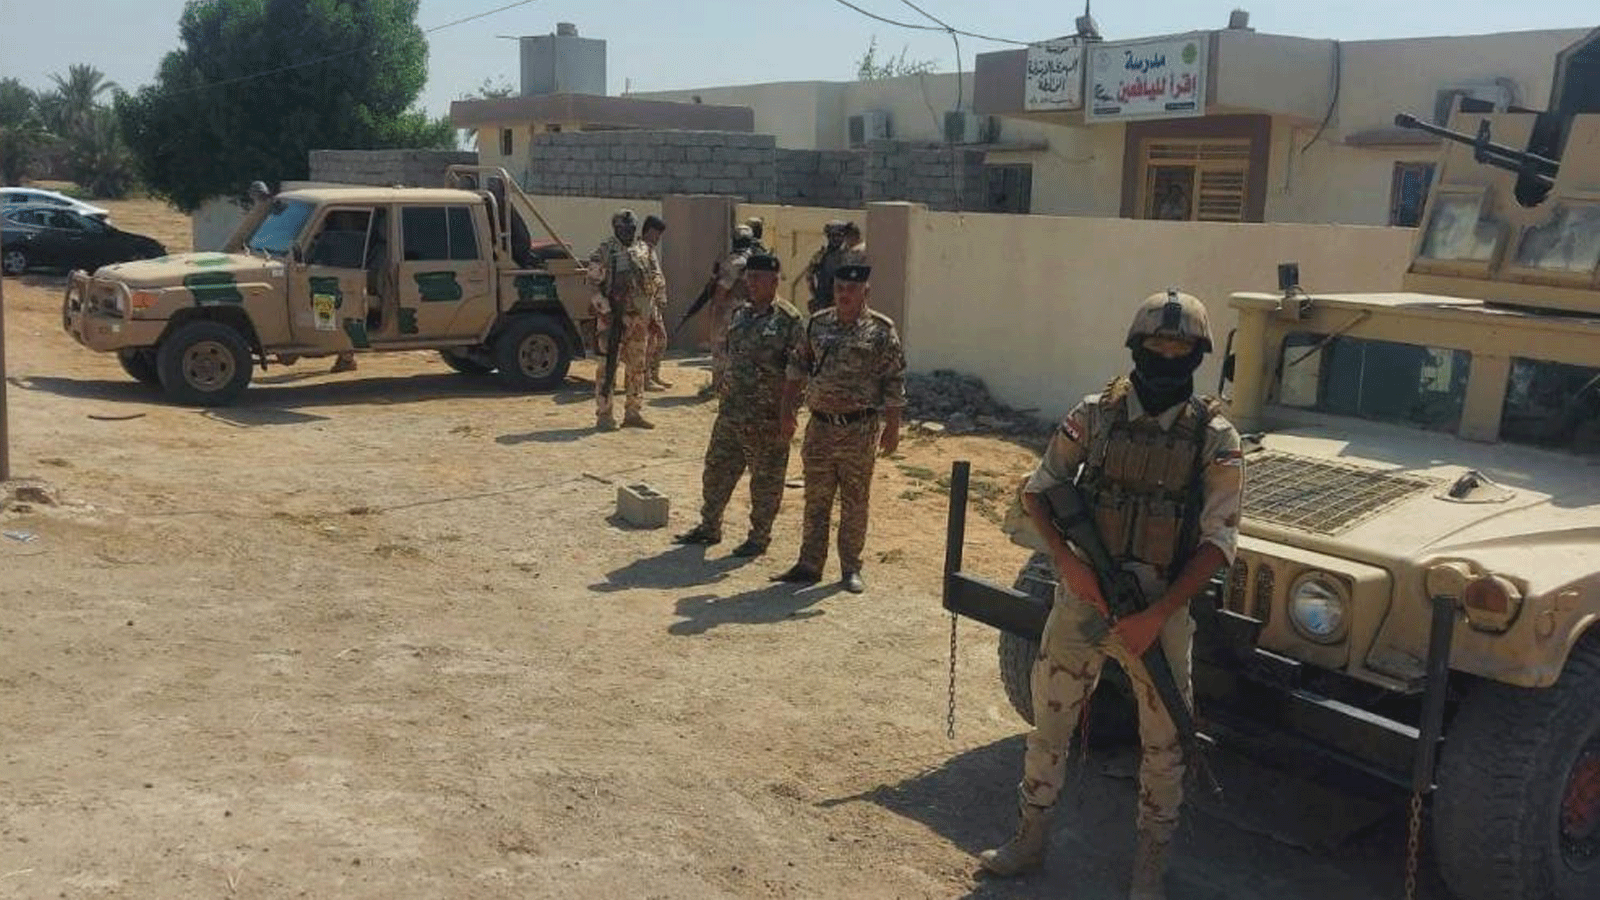  القوات العراقية دخلت السبت حال الإنذار وباشرت بتشديد الاجراءات الامنية حول مراكز الاقتراع (صورة من إعلام قوات بغداد)